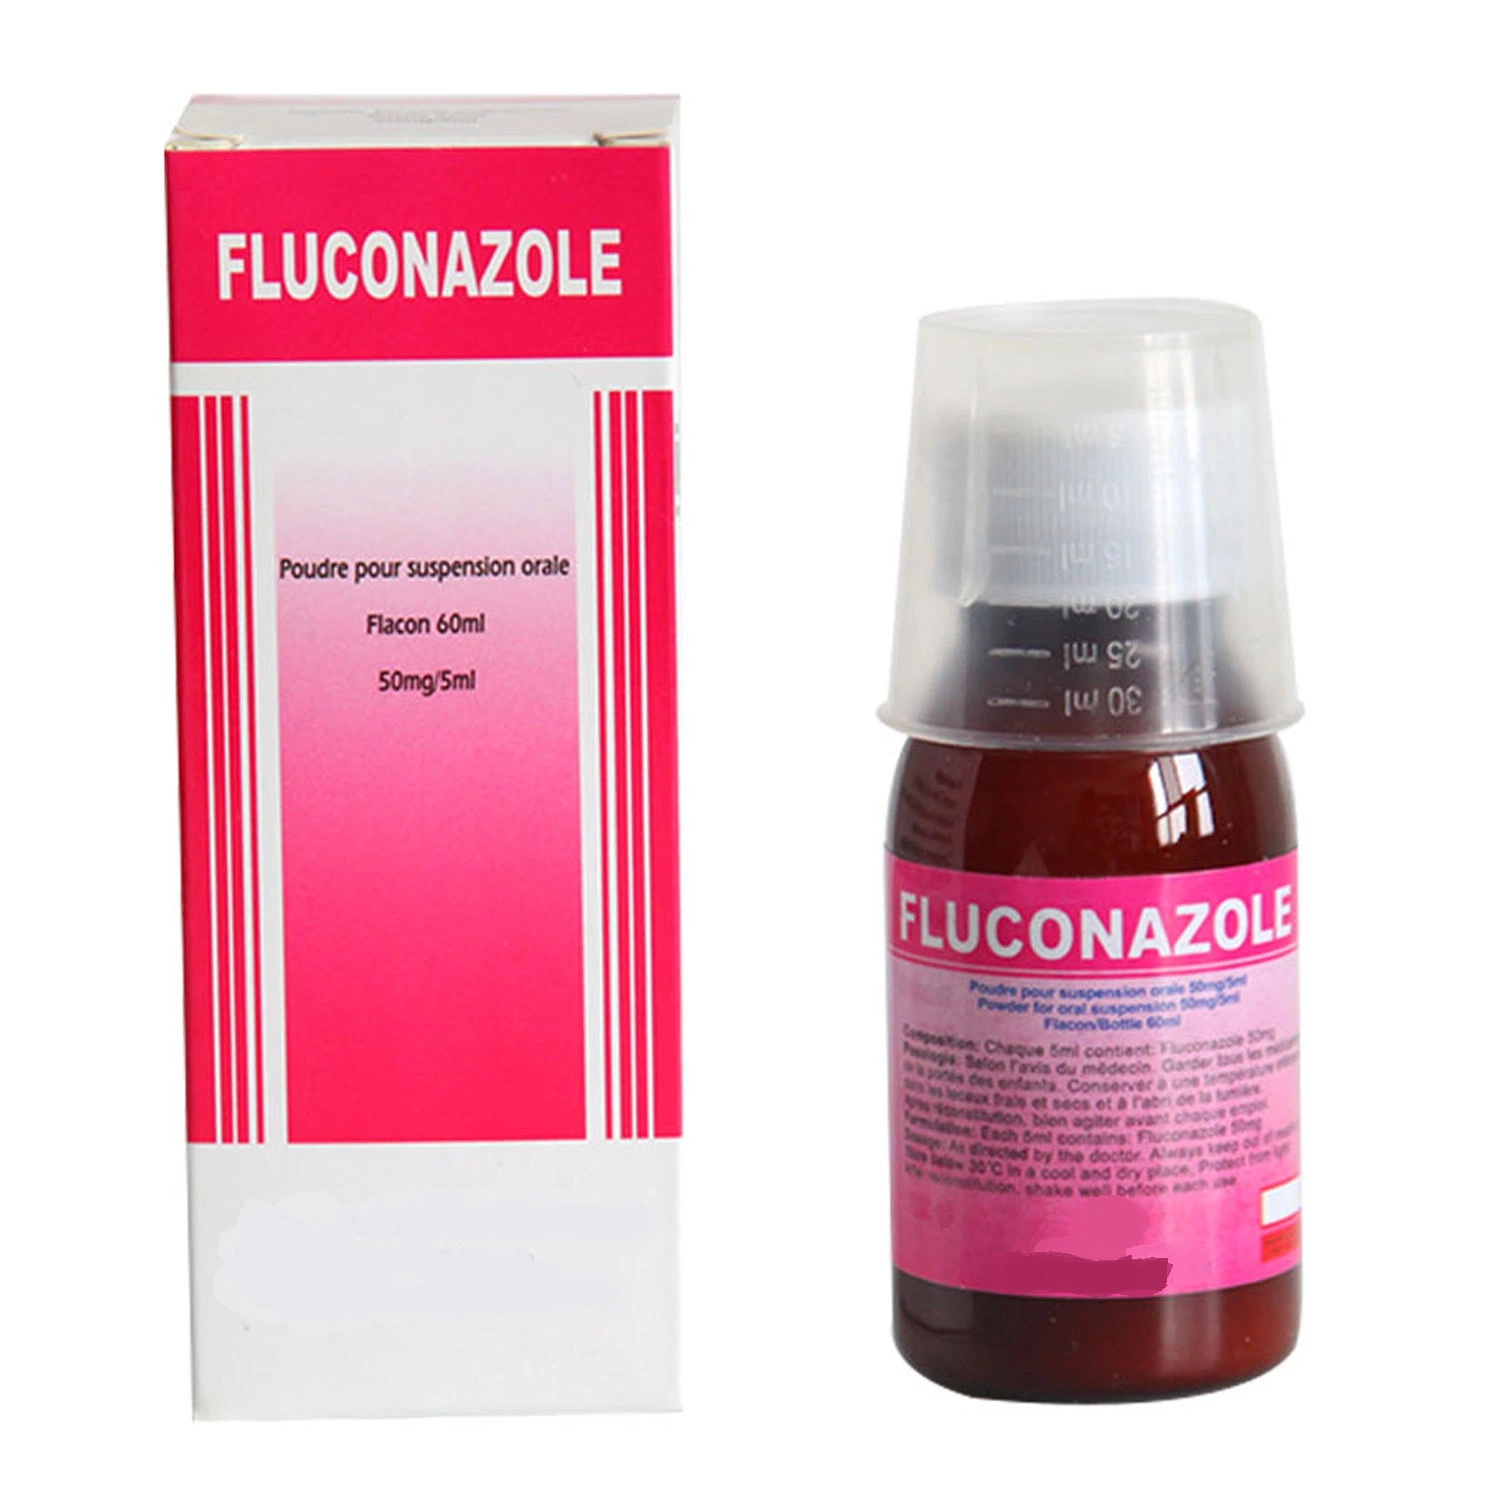 Fluconazole for Oral Suspension 50mg/5ml Finished Western Medicine Pharmaceuticals Drug